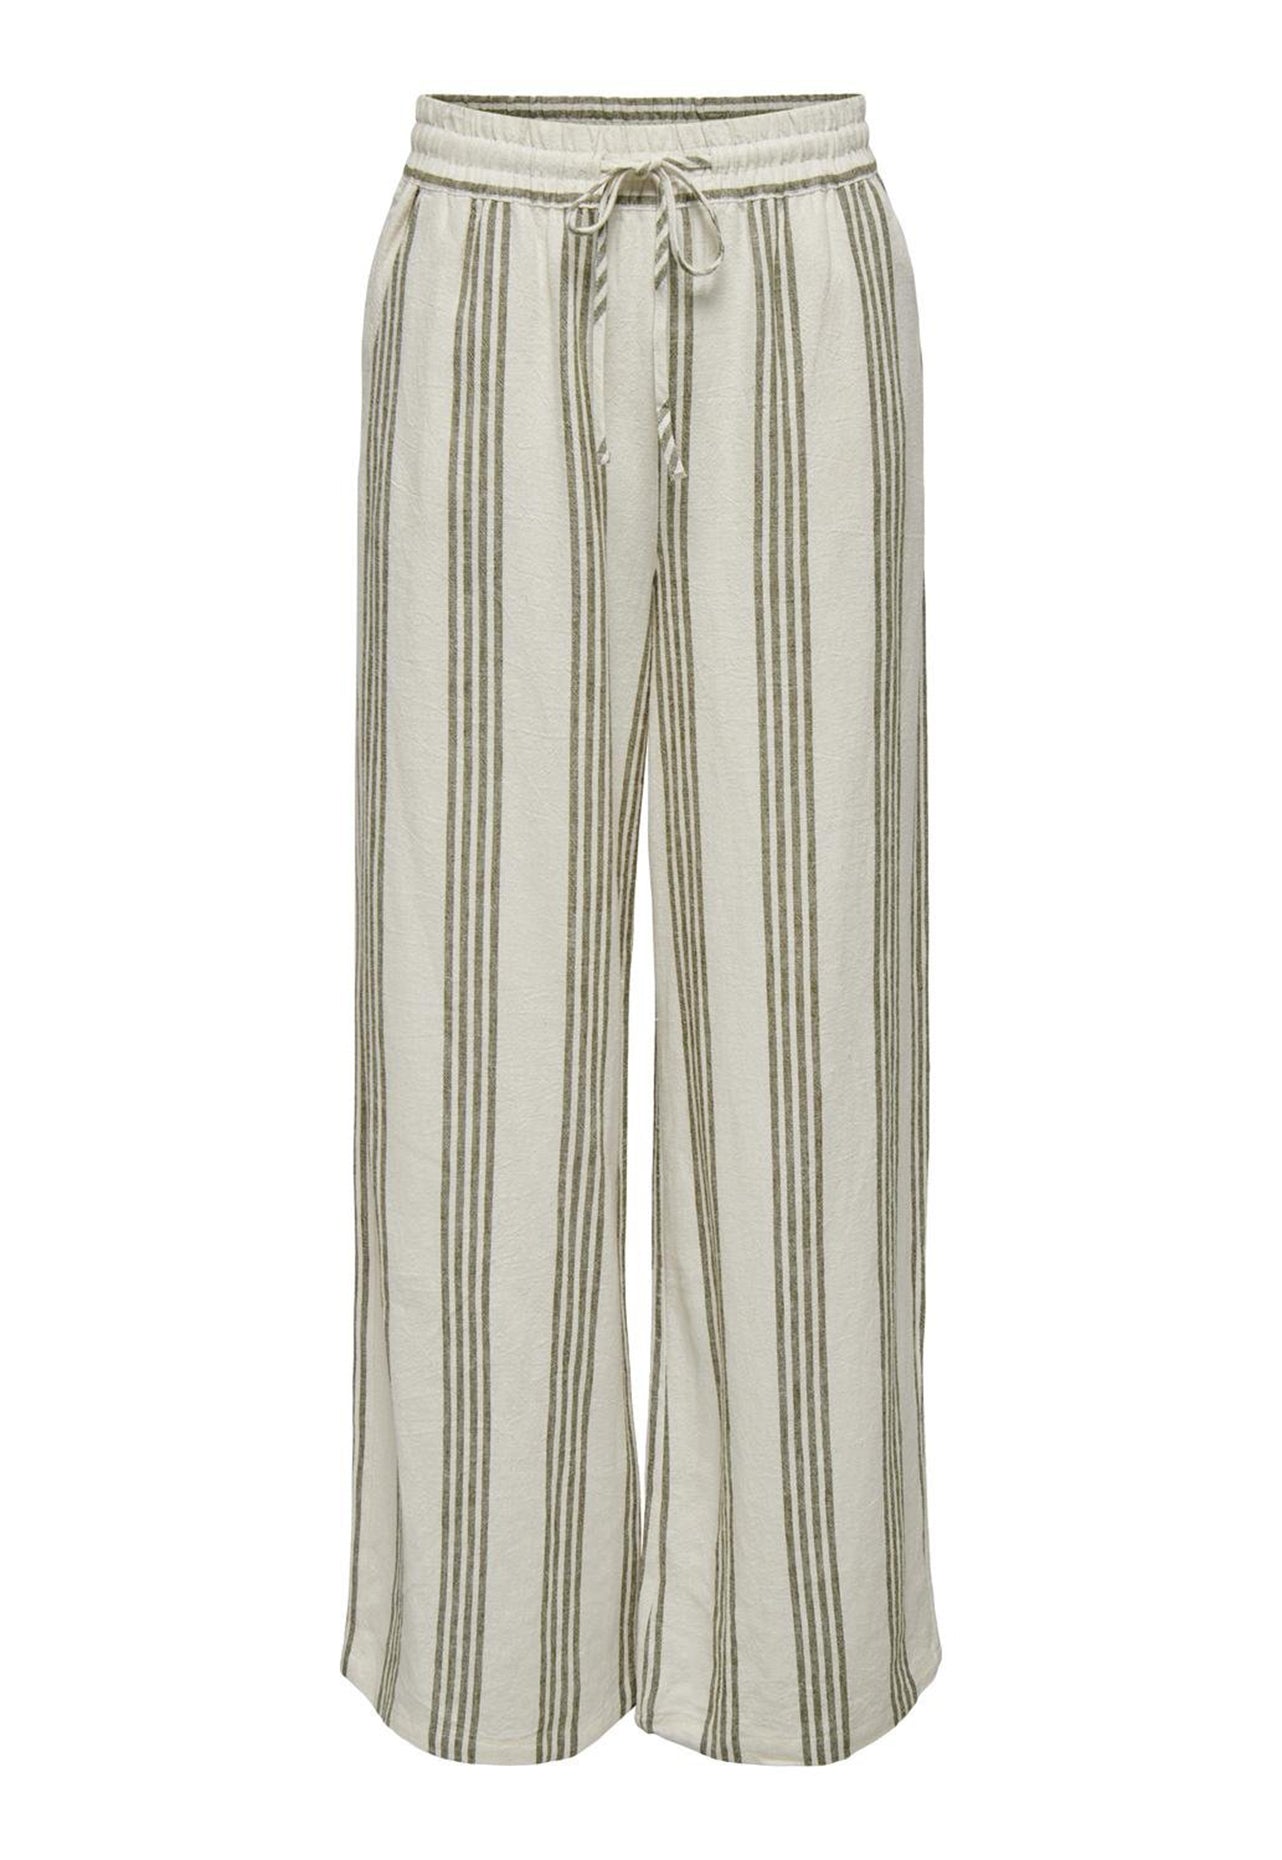 JDY Say Pantaloni coordinati in lino a righe larghe a vita alta con cintura in vita in beige e verde oliva - Abbigliamento One Nation